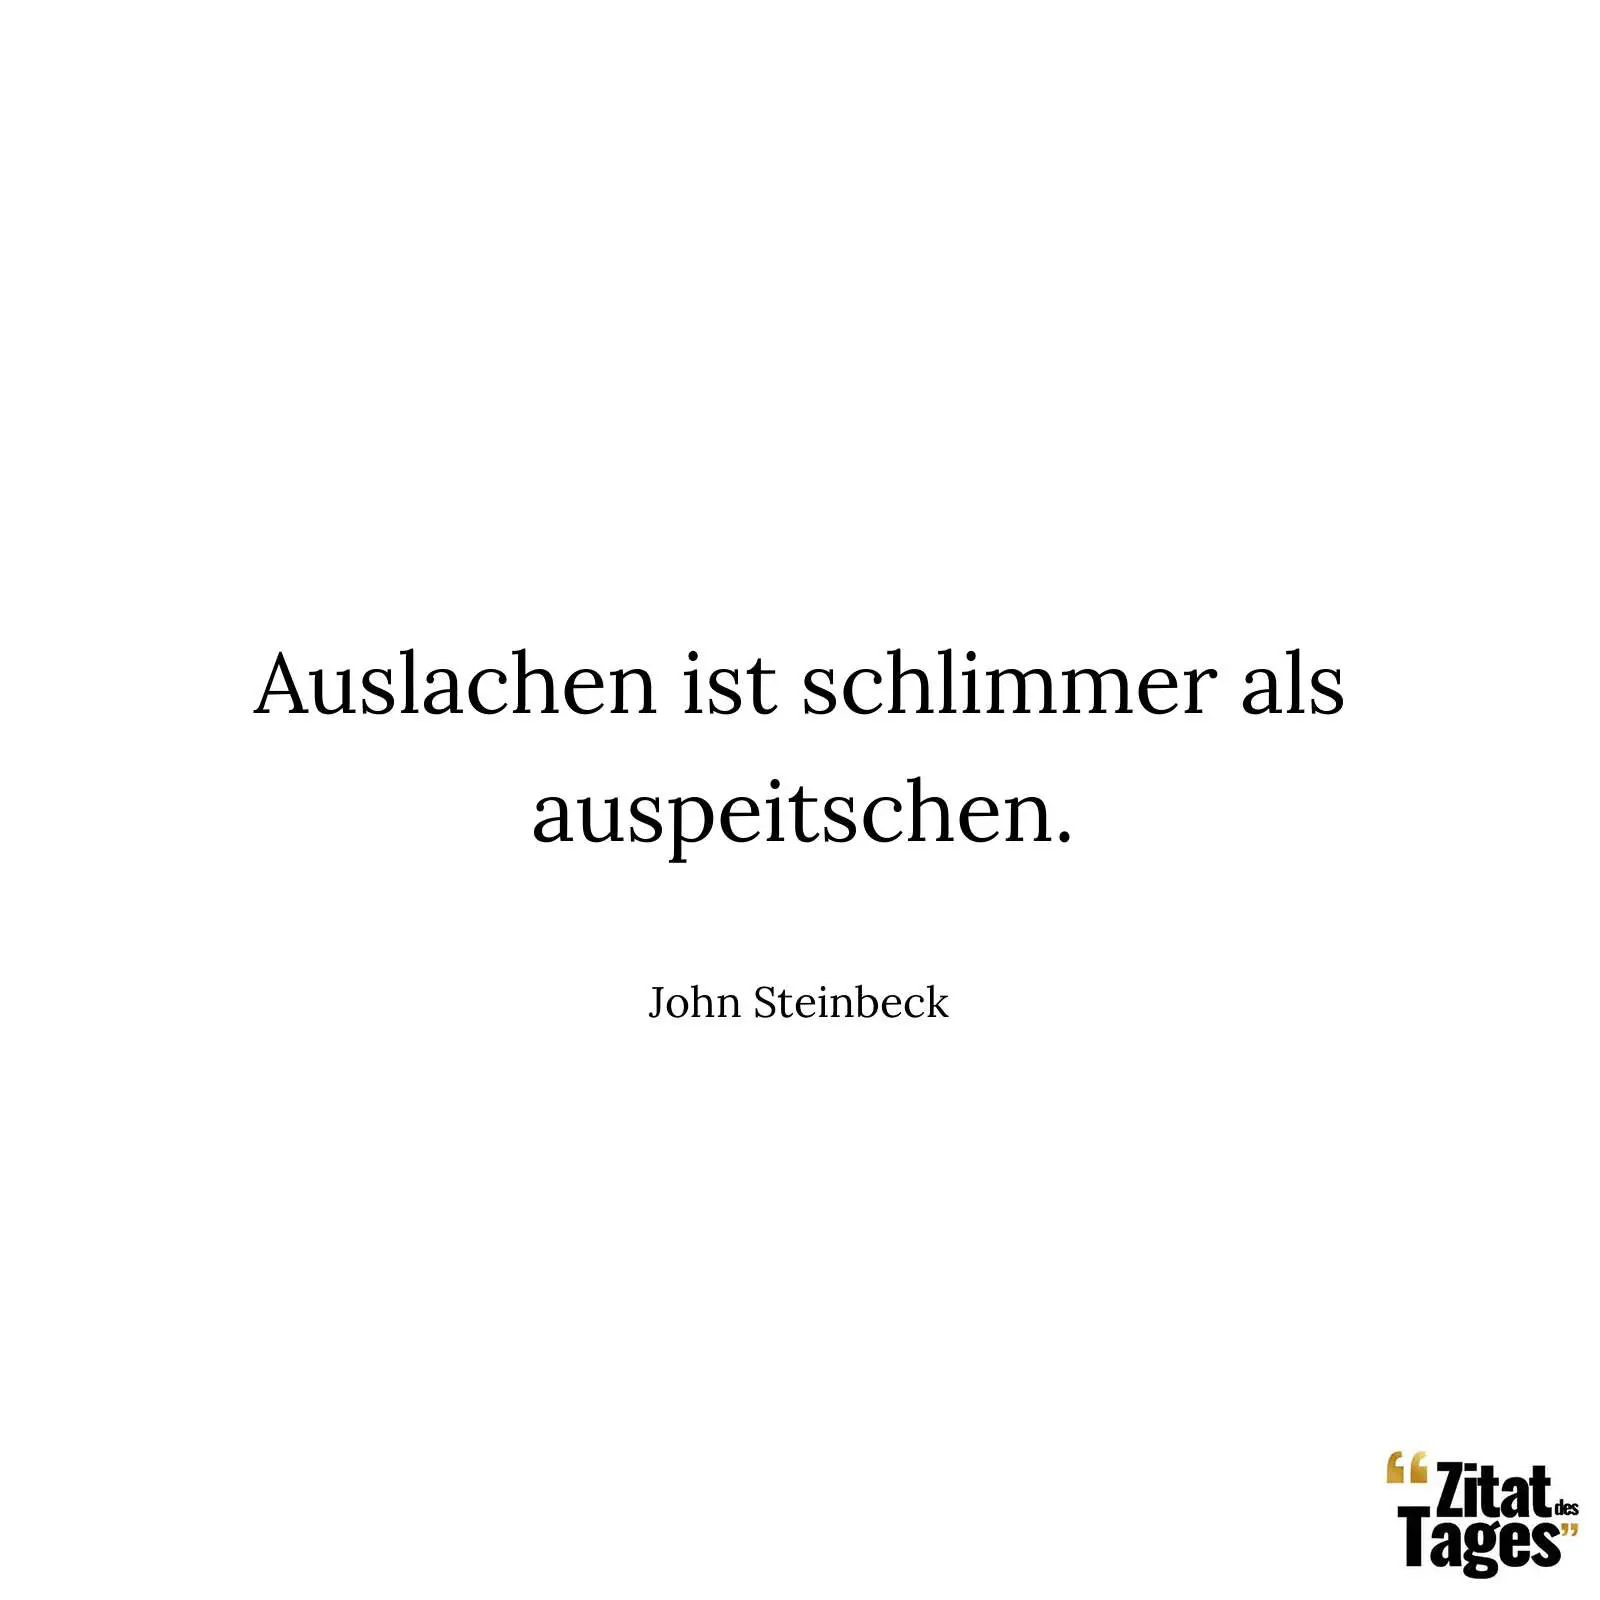 Auslachen ist schlimmer als auspeitschen. - John Steinbeck